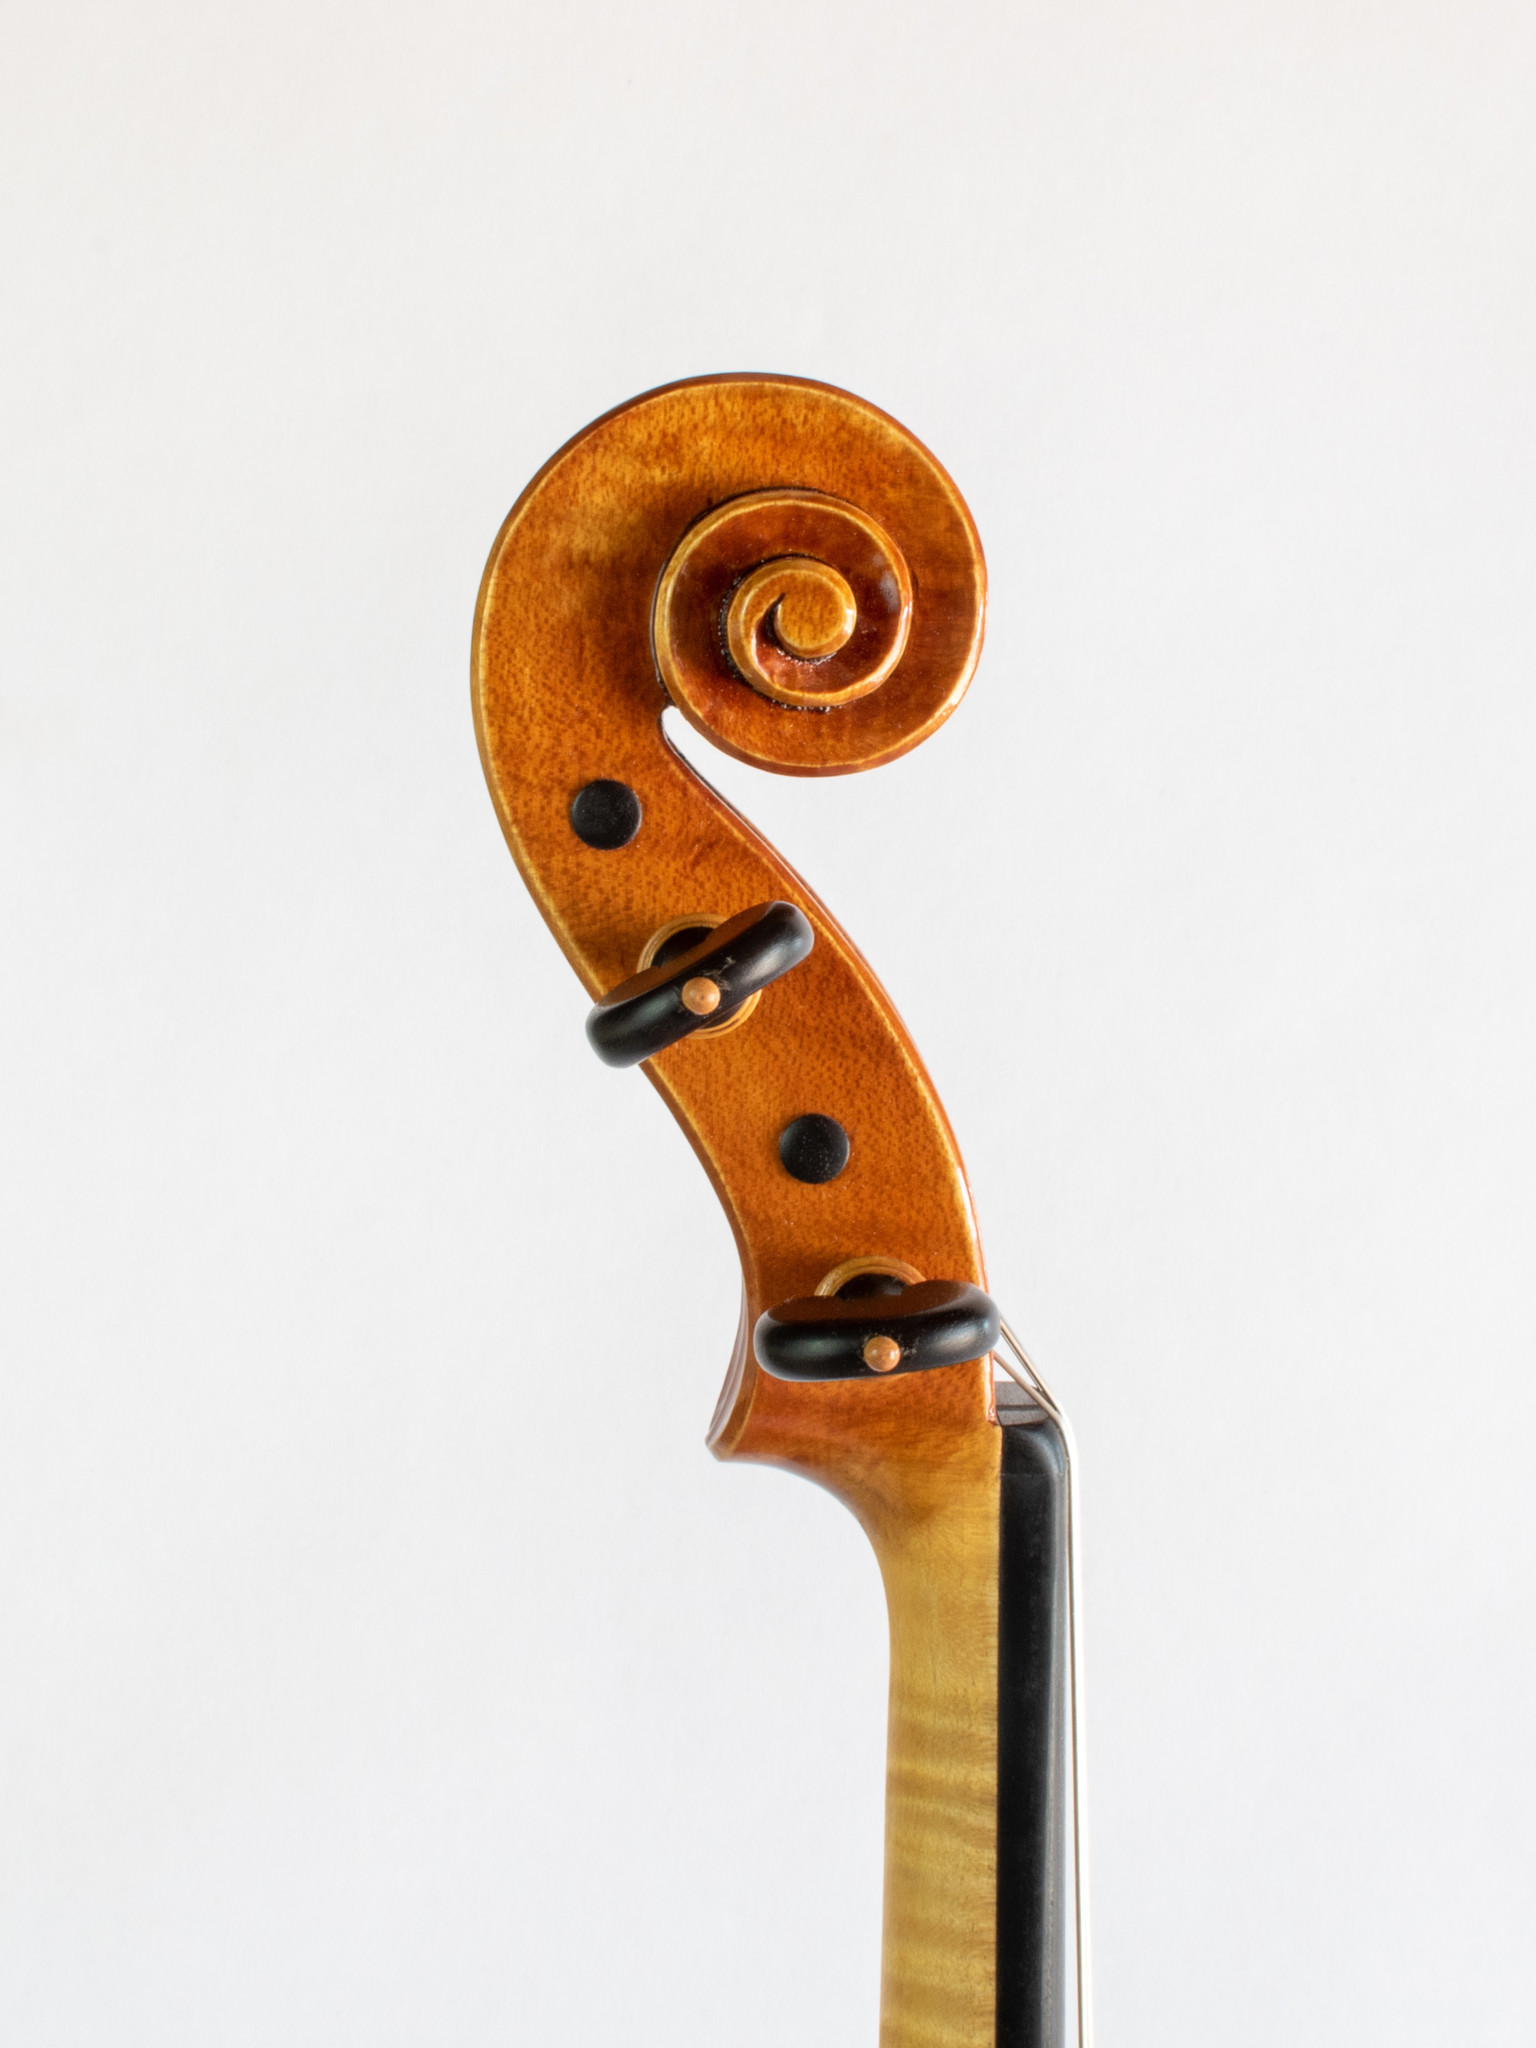 Collier: Scales & Arpeggios for Violin (violin) - Metzler Violin Shop